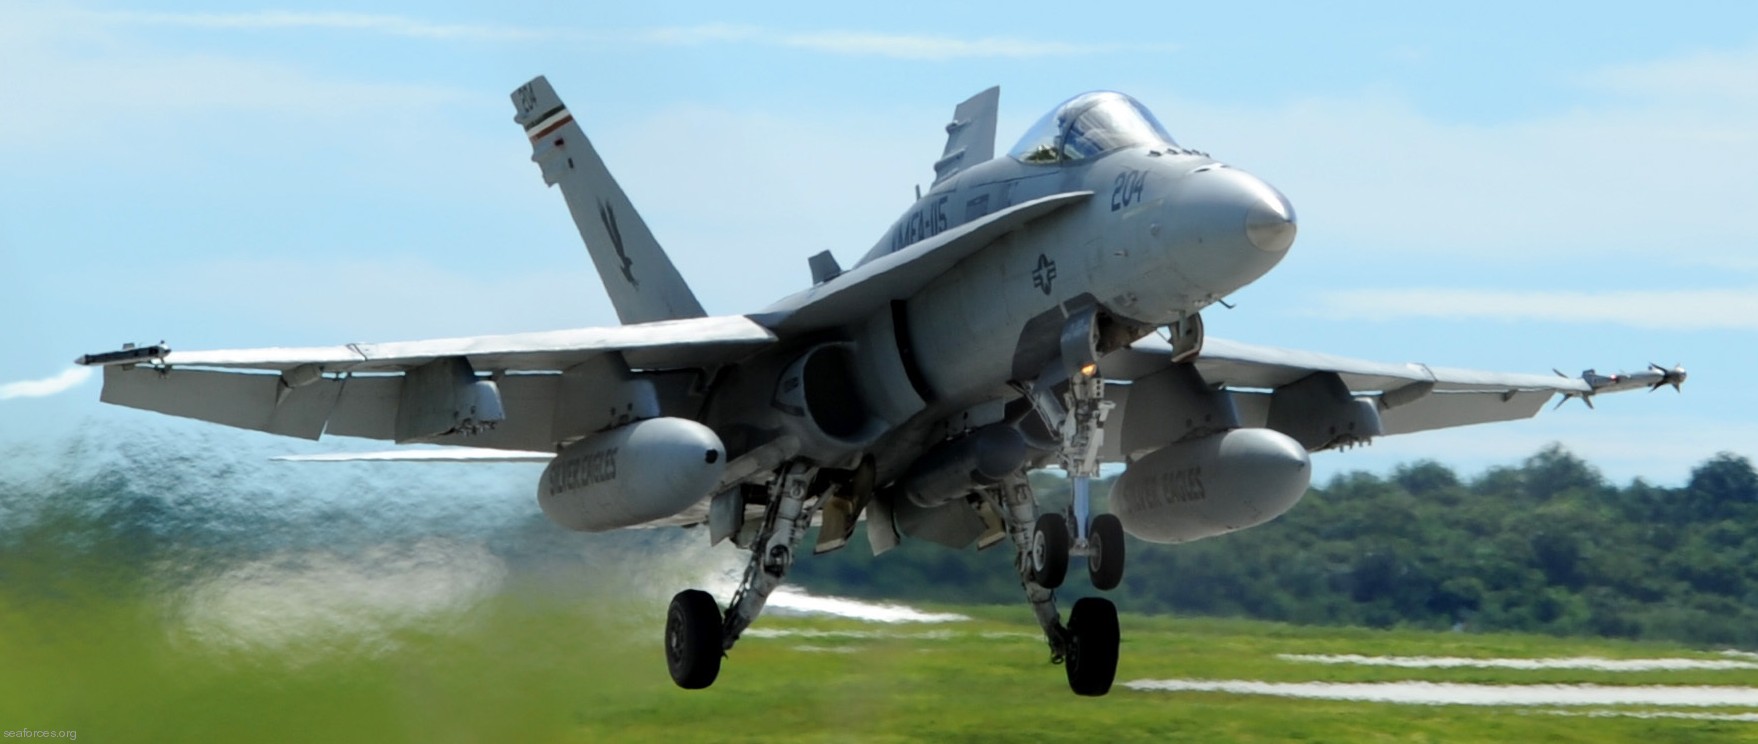 vmfa-115 silver eagles marine fighter attack squadron f/a-18a+ hornet 142